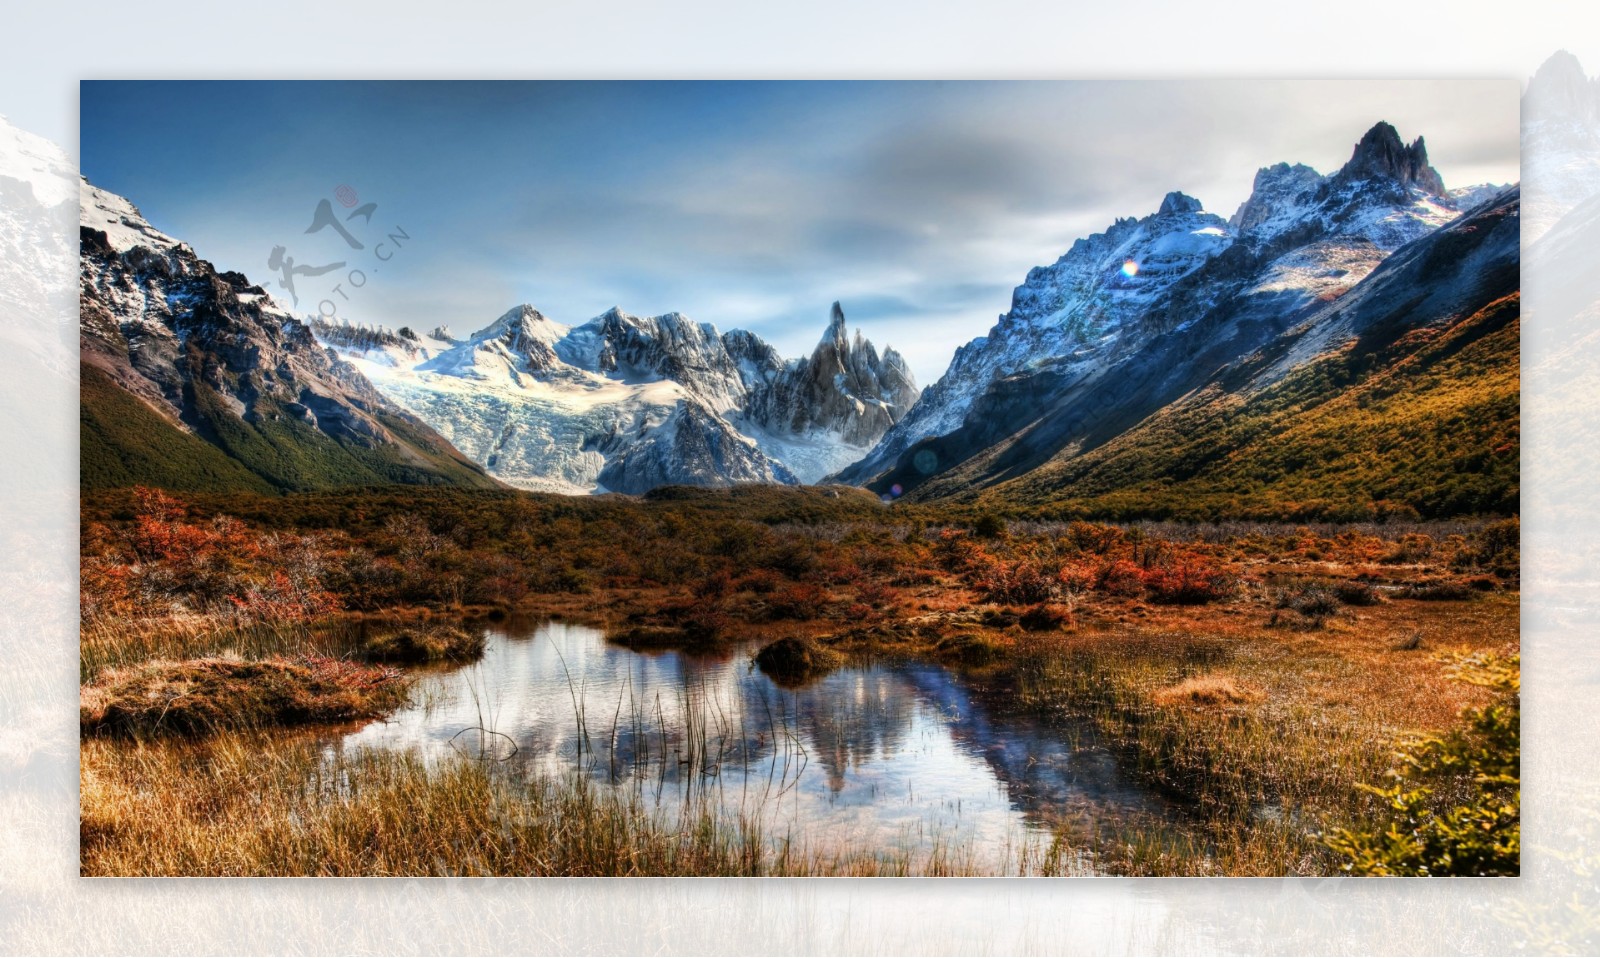 阿根廷雪山脚下自然景观图片